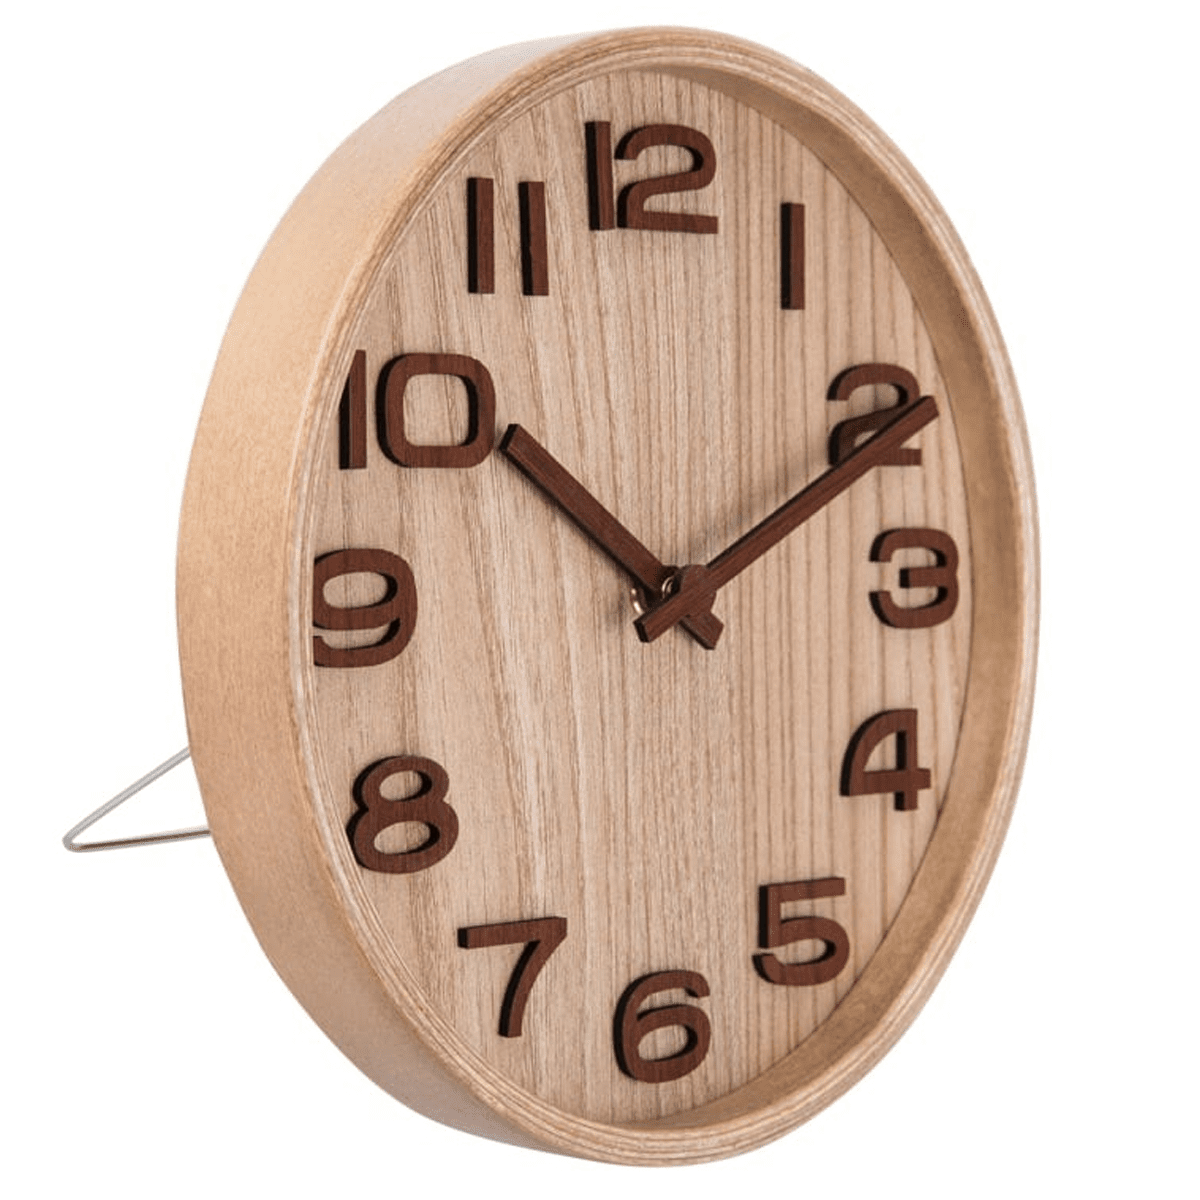 Zhanjiang Z Natural Wood Table Clock